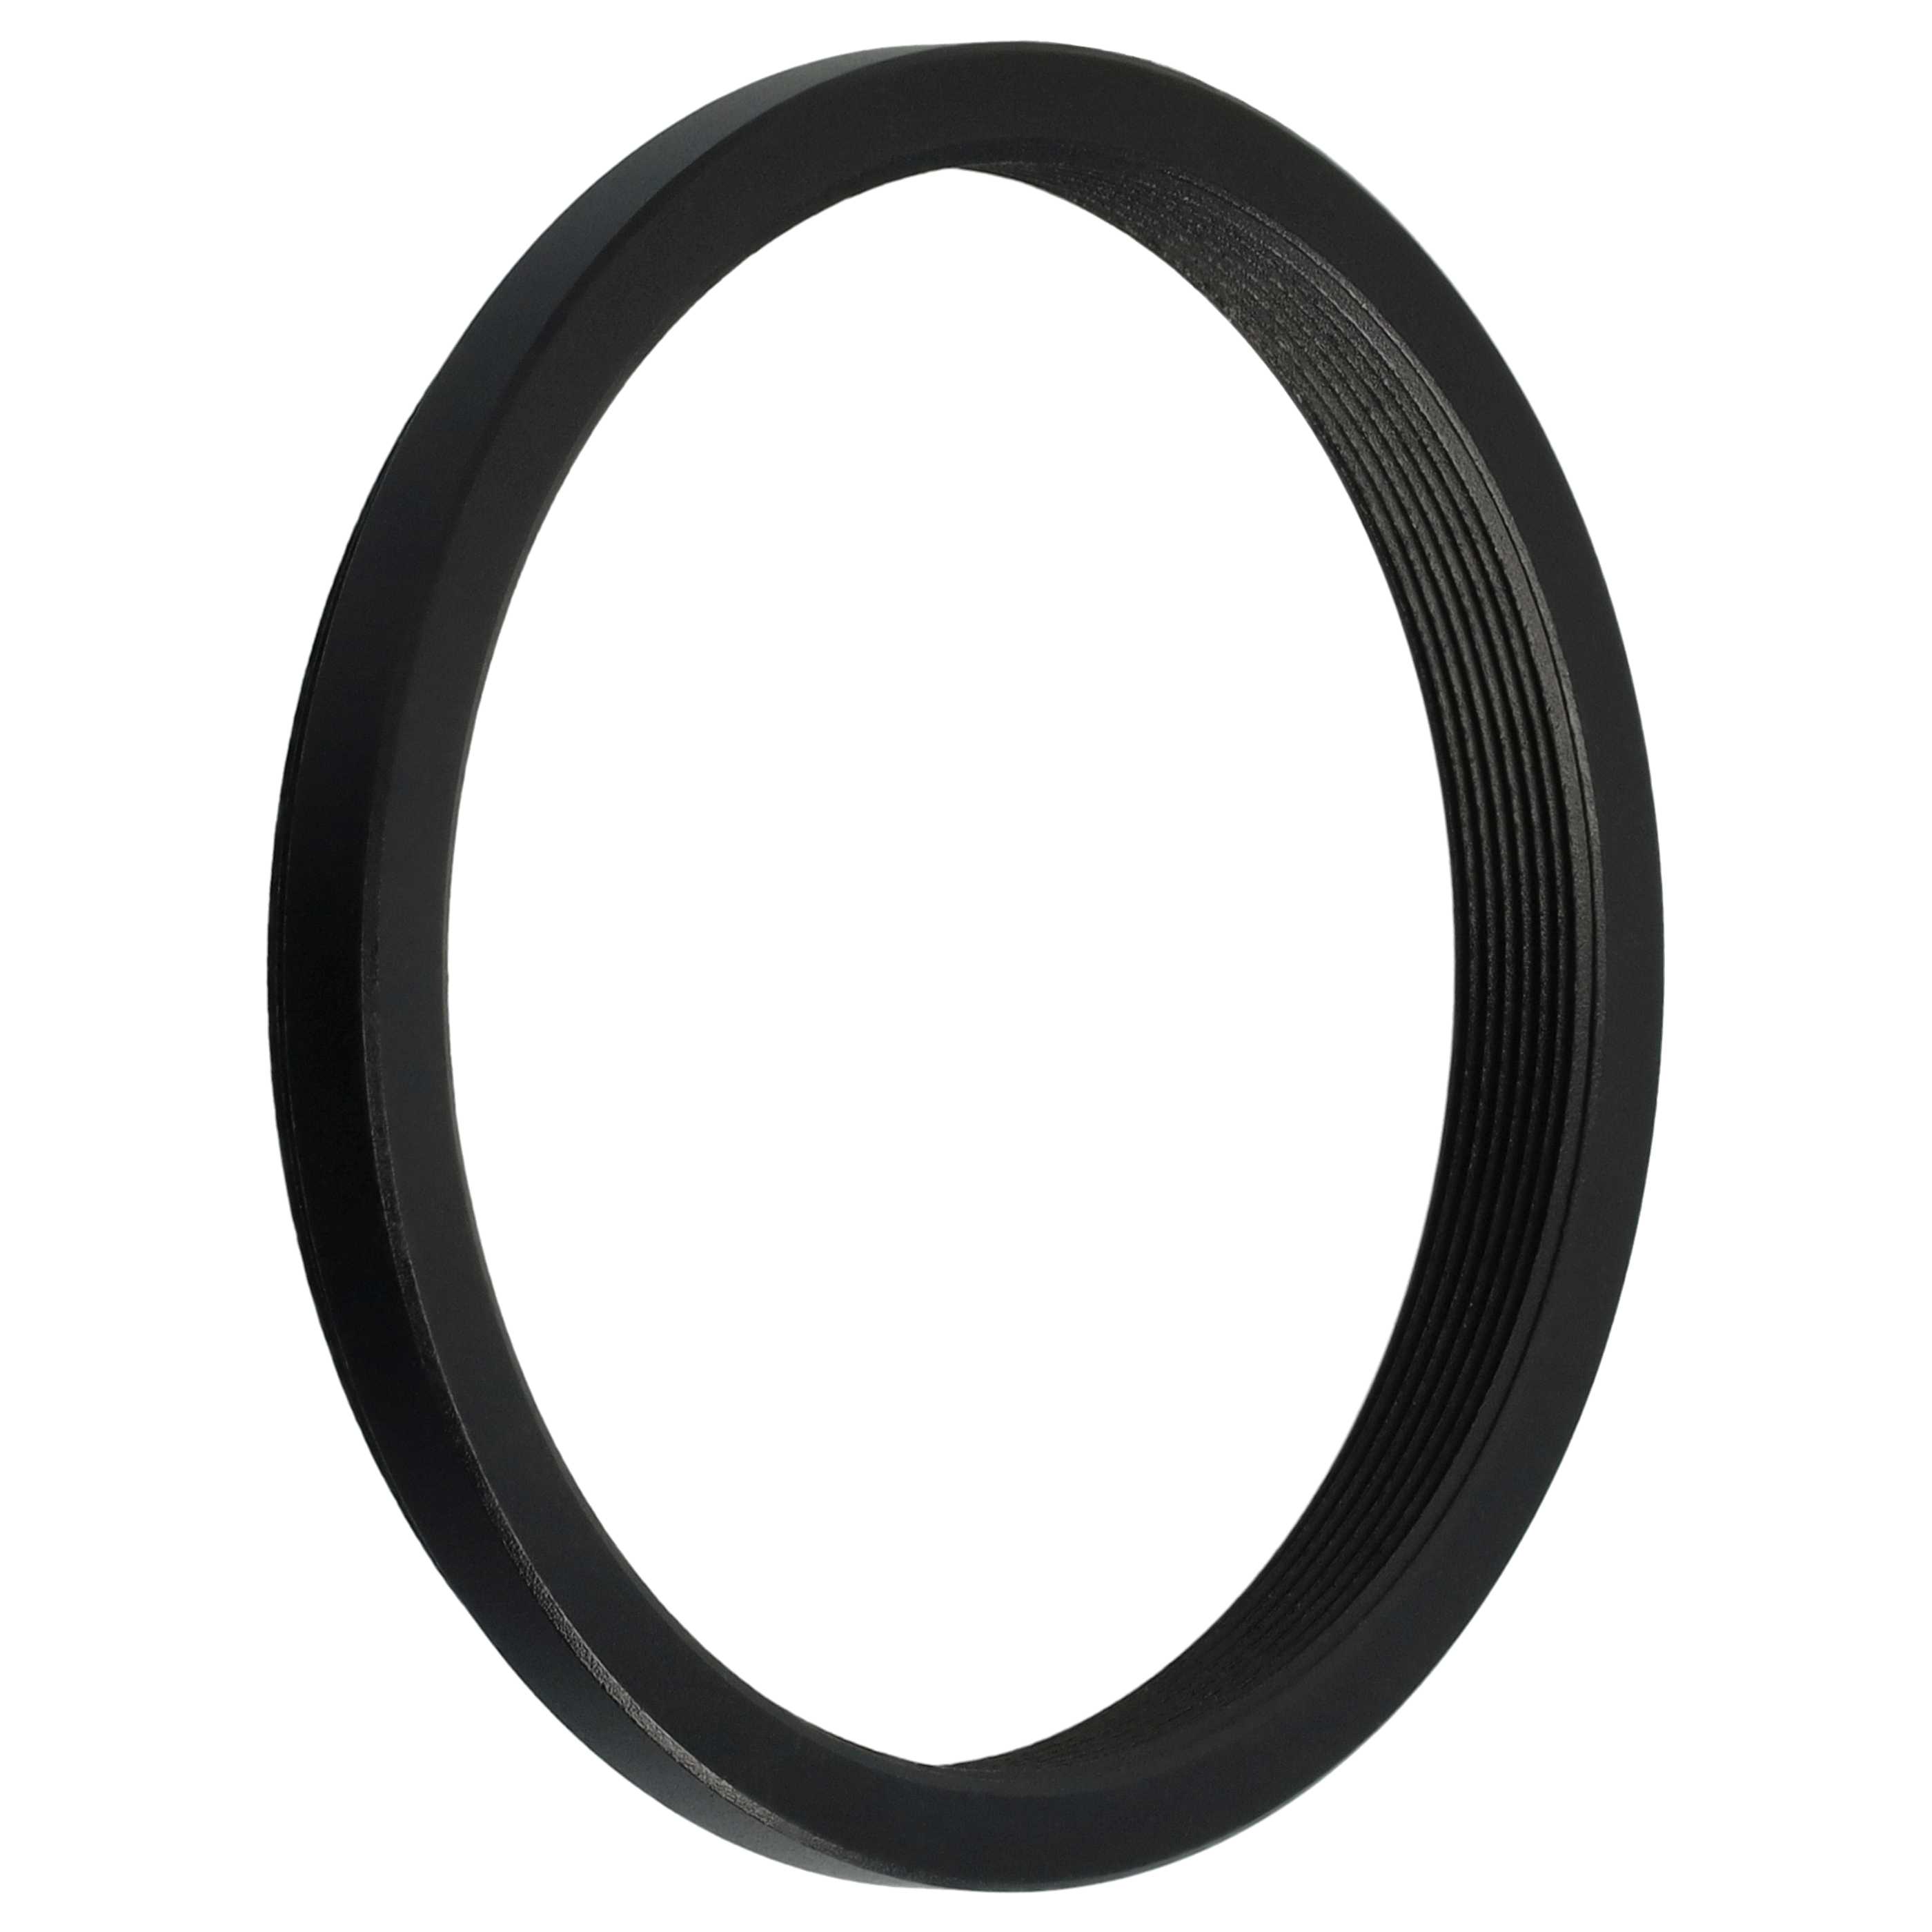 Redukcja filtrowa adapter Step-Down 52 mm - 48 mm pasująca do obiektywu - metal, czarny